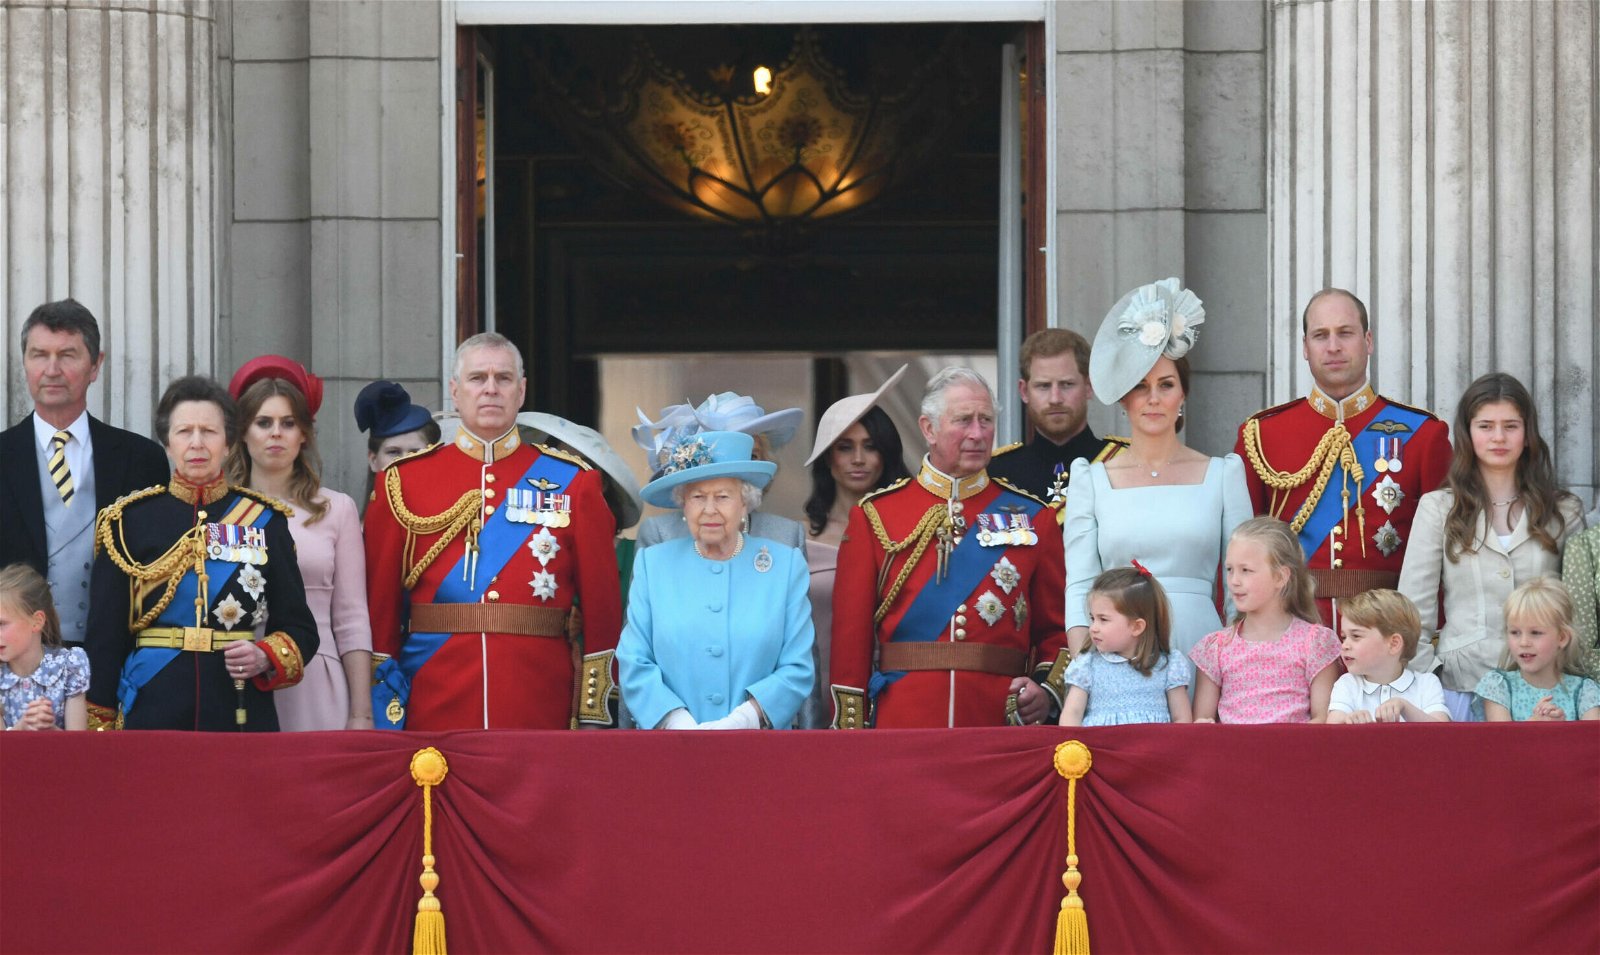 The royal family at the balcony